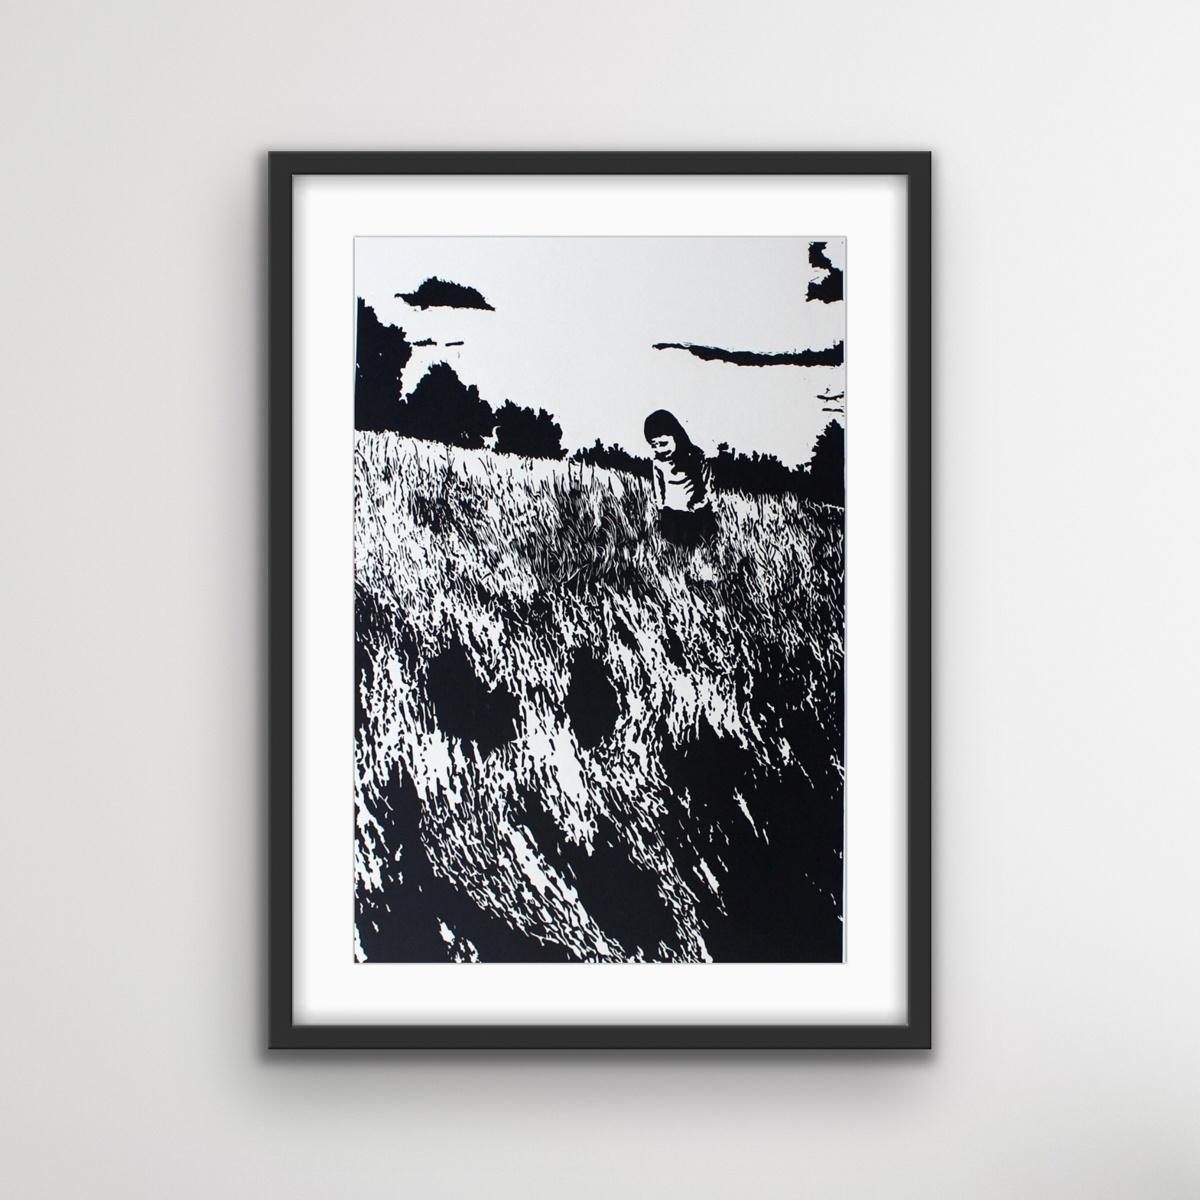 Zeitgenössischer minimalistischer Schwarz-Weiß-Linolschnitt auf Papier der polnischen Künstlerin Jolanta Babicz. Die Auflage ist auf 20 Exemplare begrenzt. 

Das Kunstwerk ist nicht gerahmt. Fotos mit Rahmen sind nur Visualisierungen.

JOLANTA